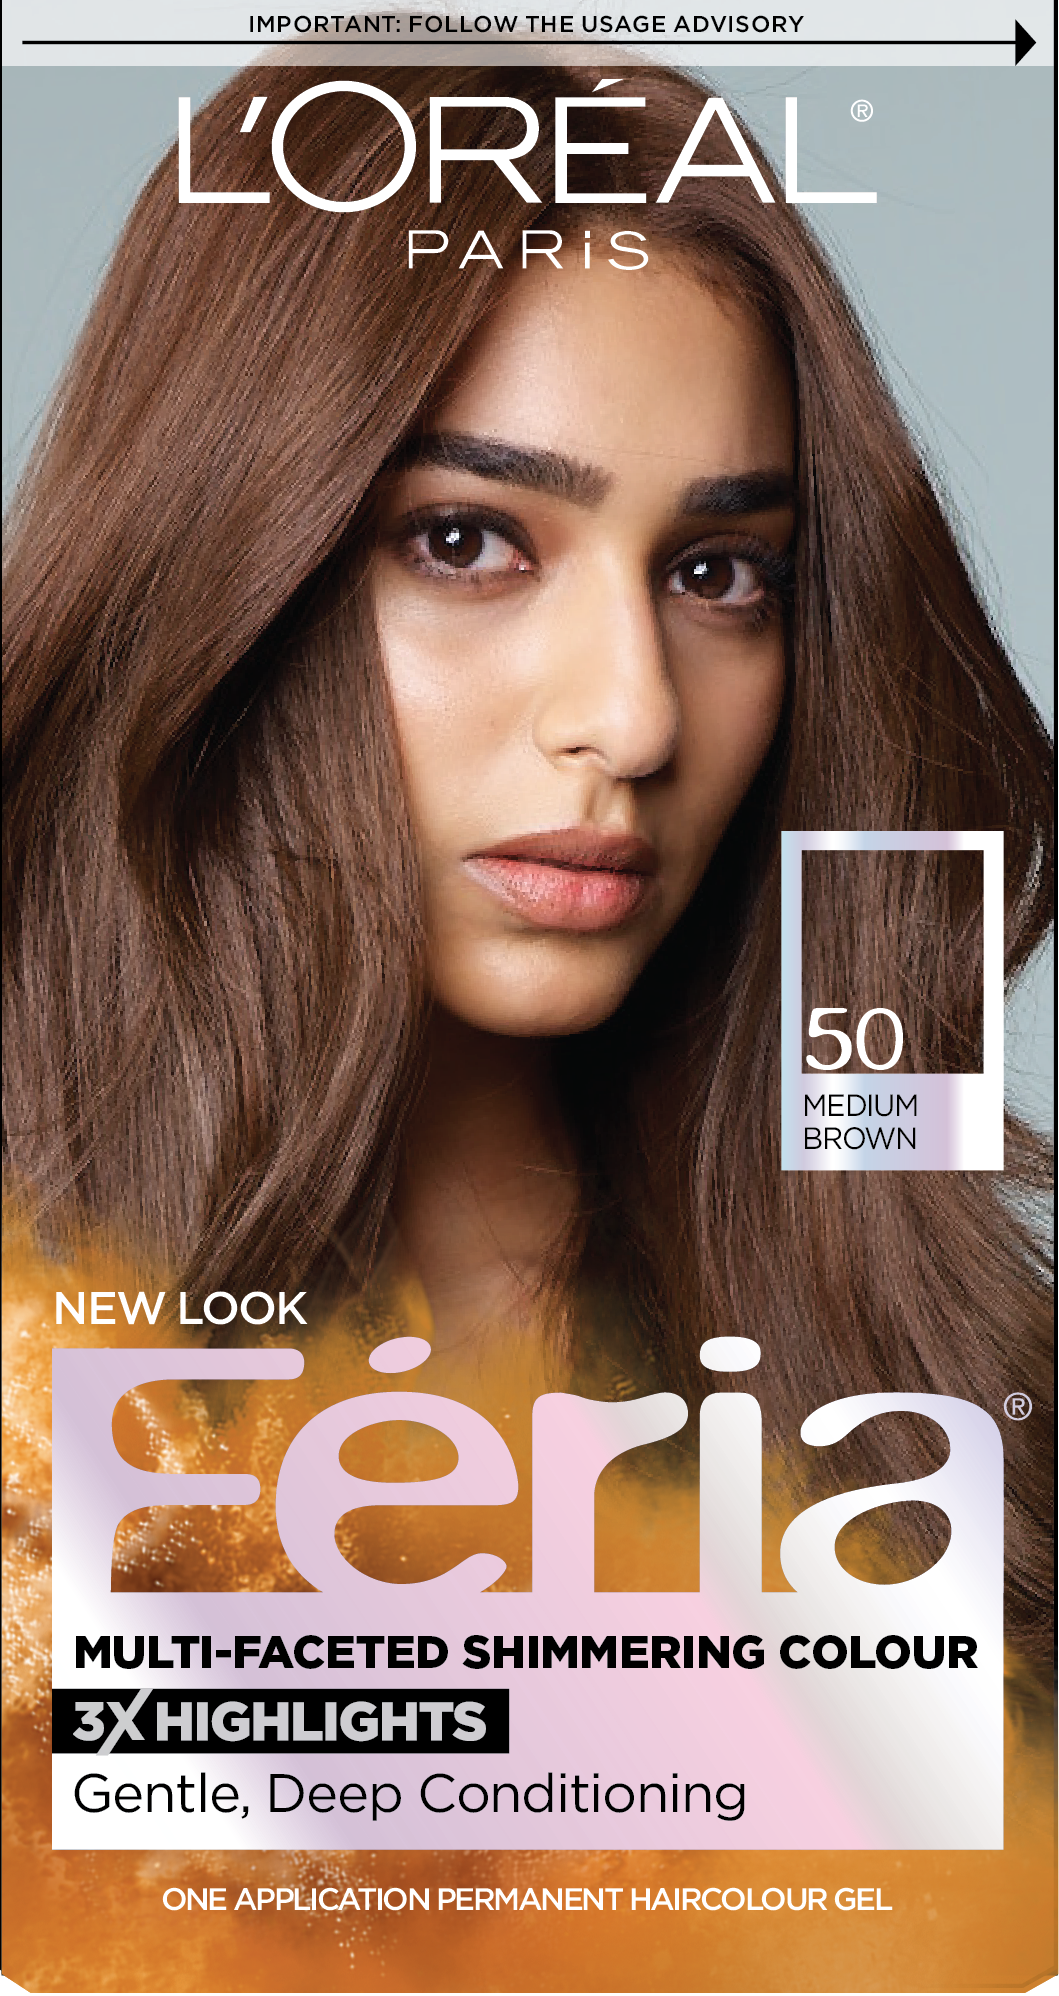 L'Oreal Paris Feria Permanent Hair Color, 50 Havana Brown Medium Brown - image 1 of 8